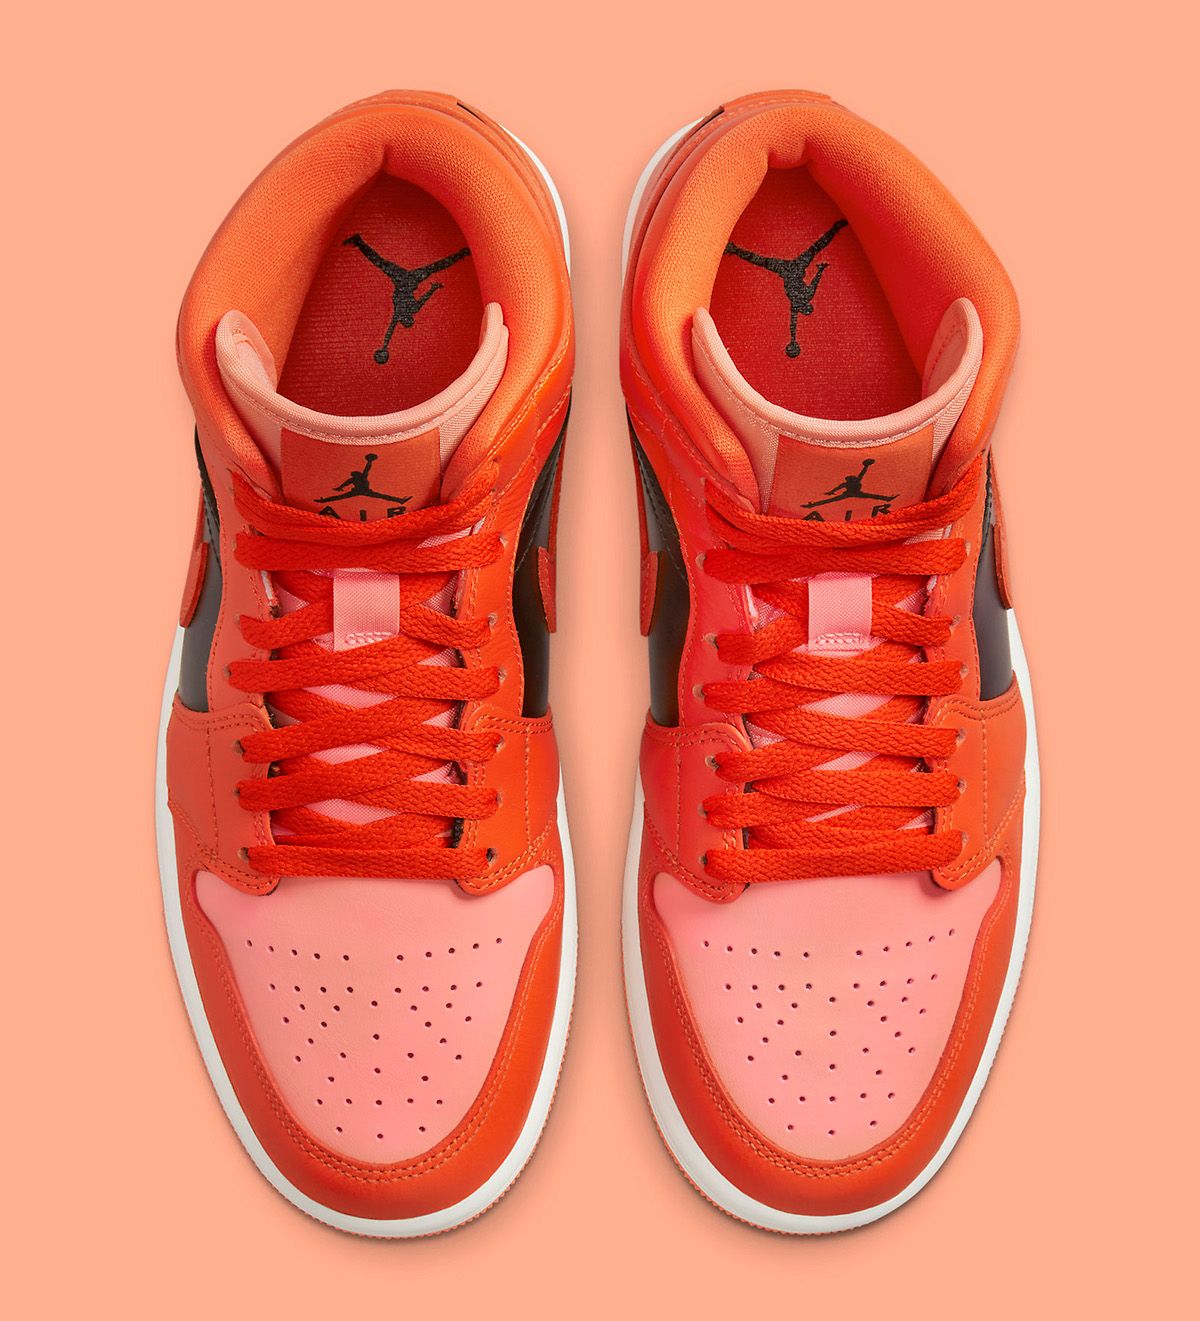 Available Now // Air Jordan 1 Mid “Crimson Bliss” | House of Heat°